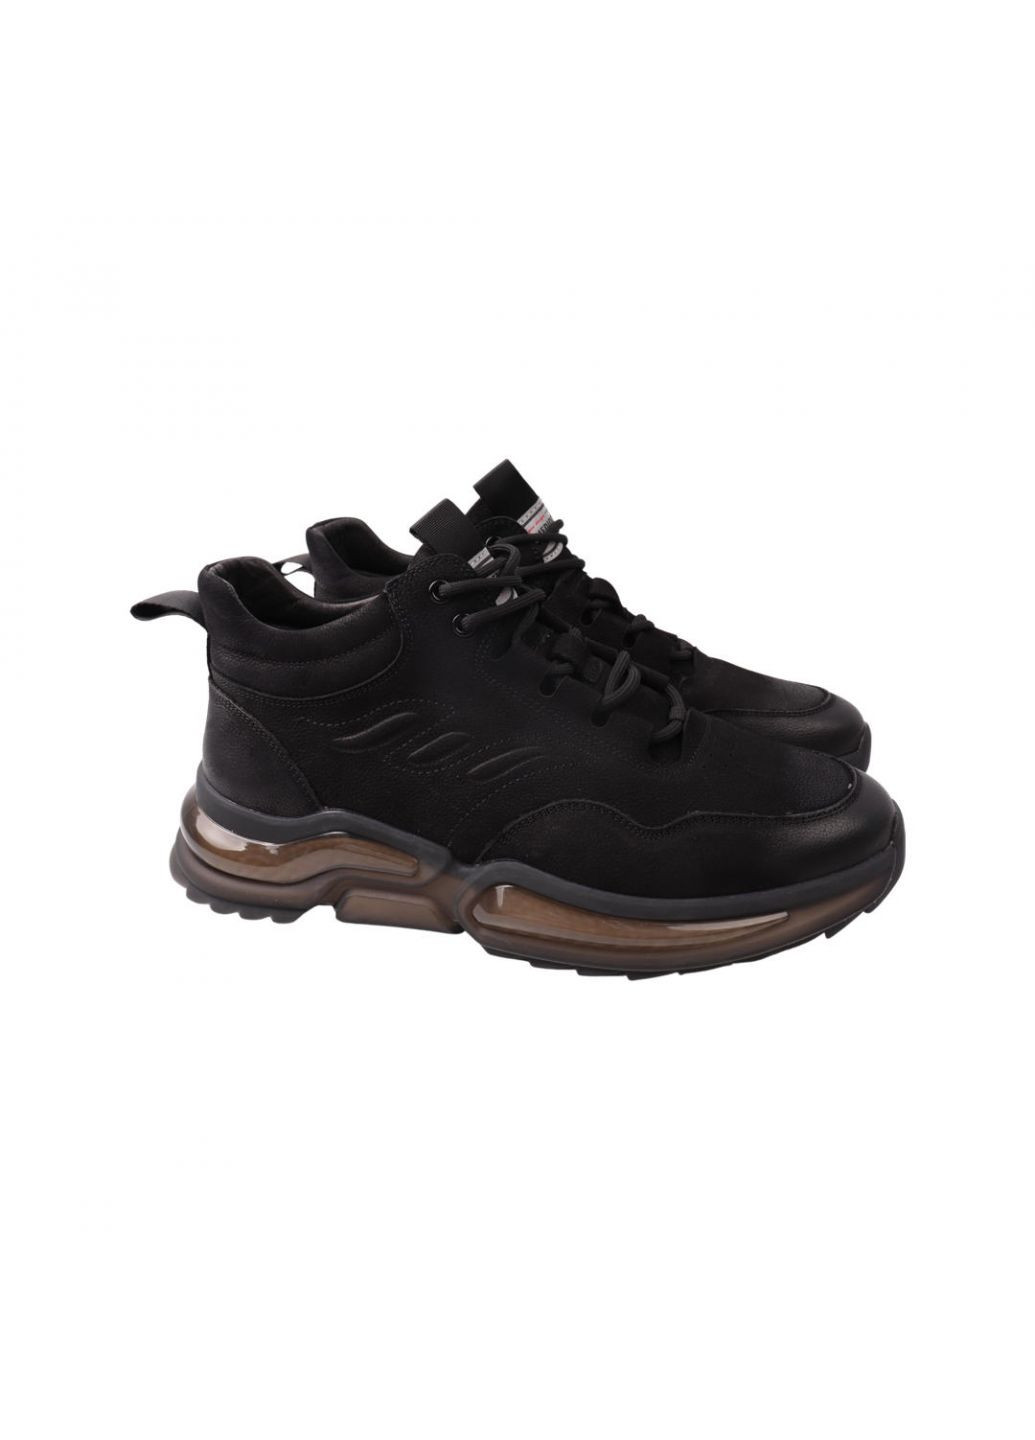 Черные ботинки мужские черные нубук Lifexpert